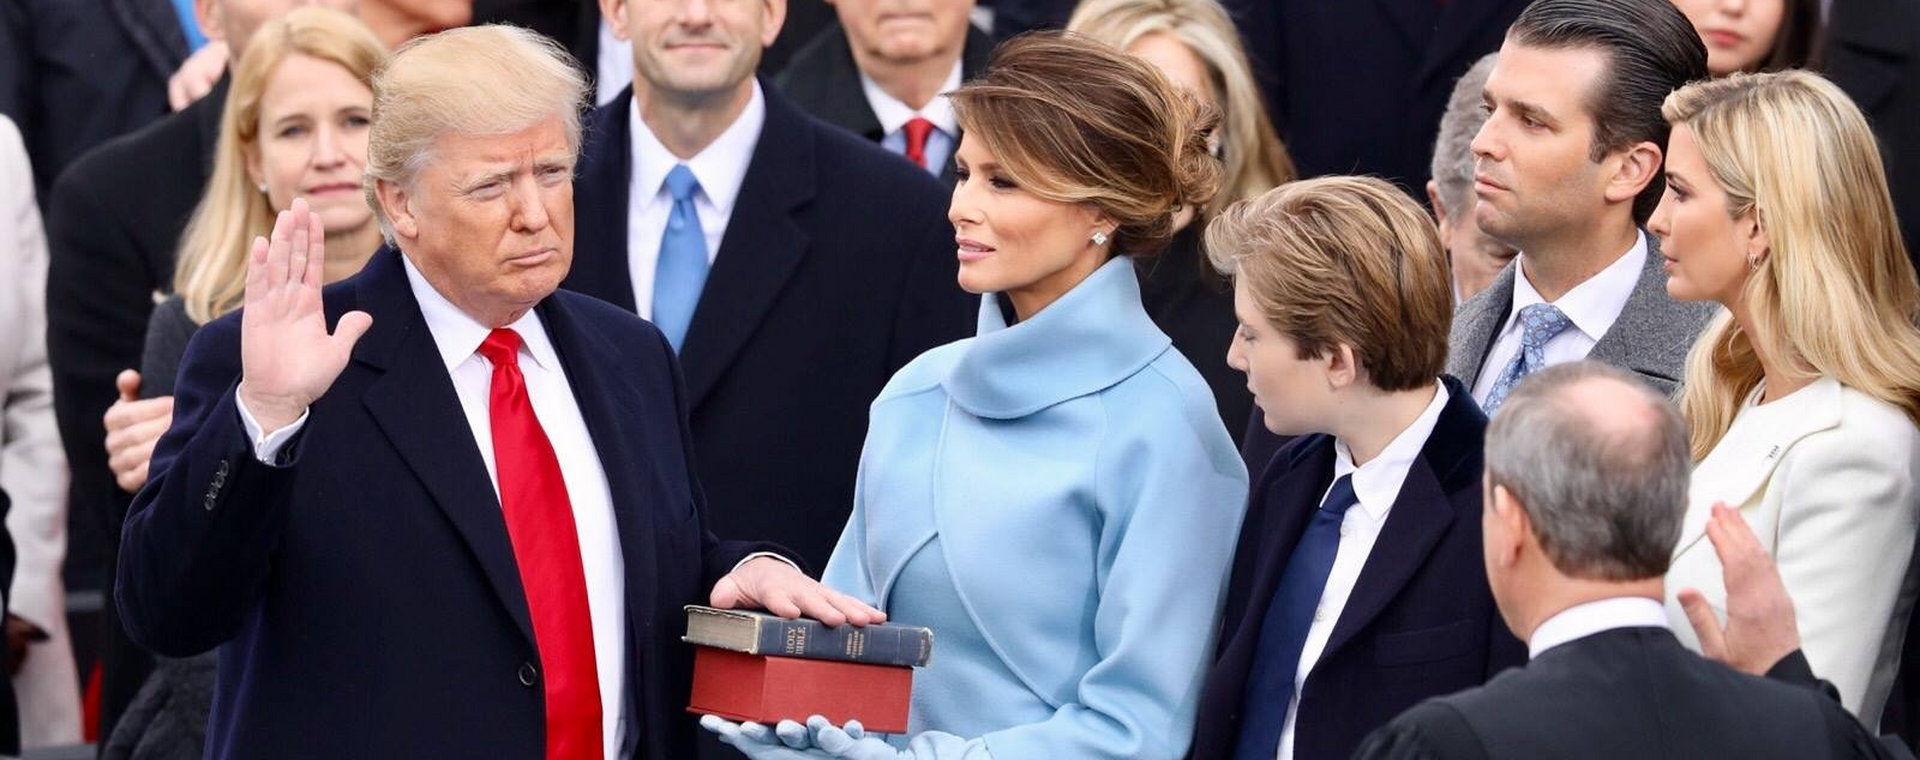 Na zdjęciu z 20 stycznia 2017 r. prezydent Donald Trump przyjmuje przysięgę od przewodniczącego sądu najwyższego Johna Robertsa, podczas gdy jego żona Melania Trump trzyma Biblię. 